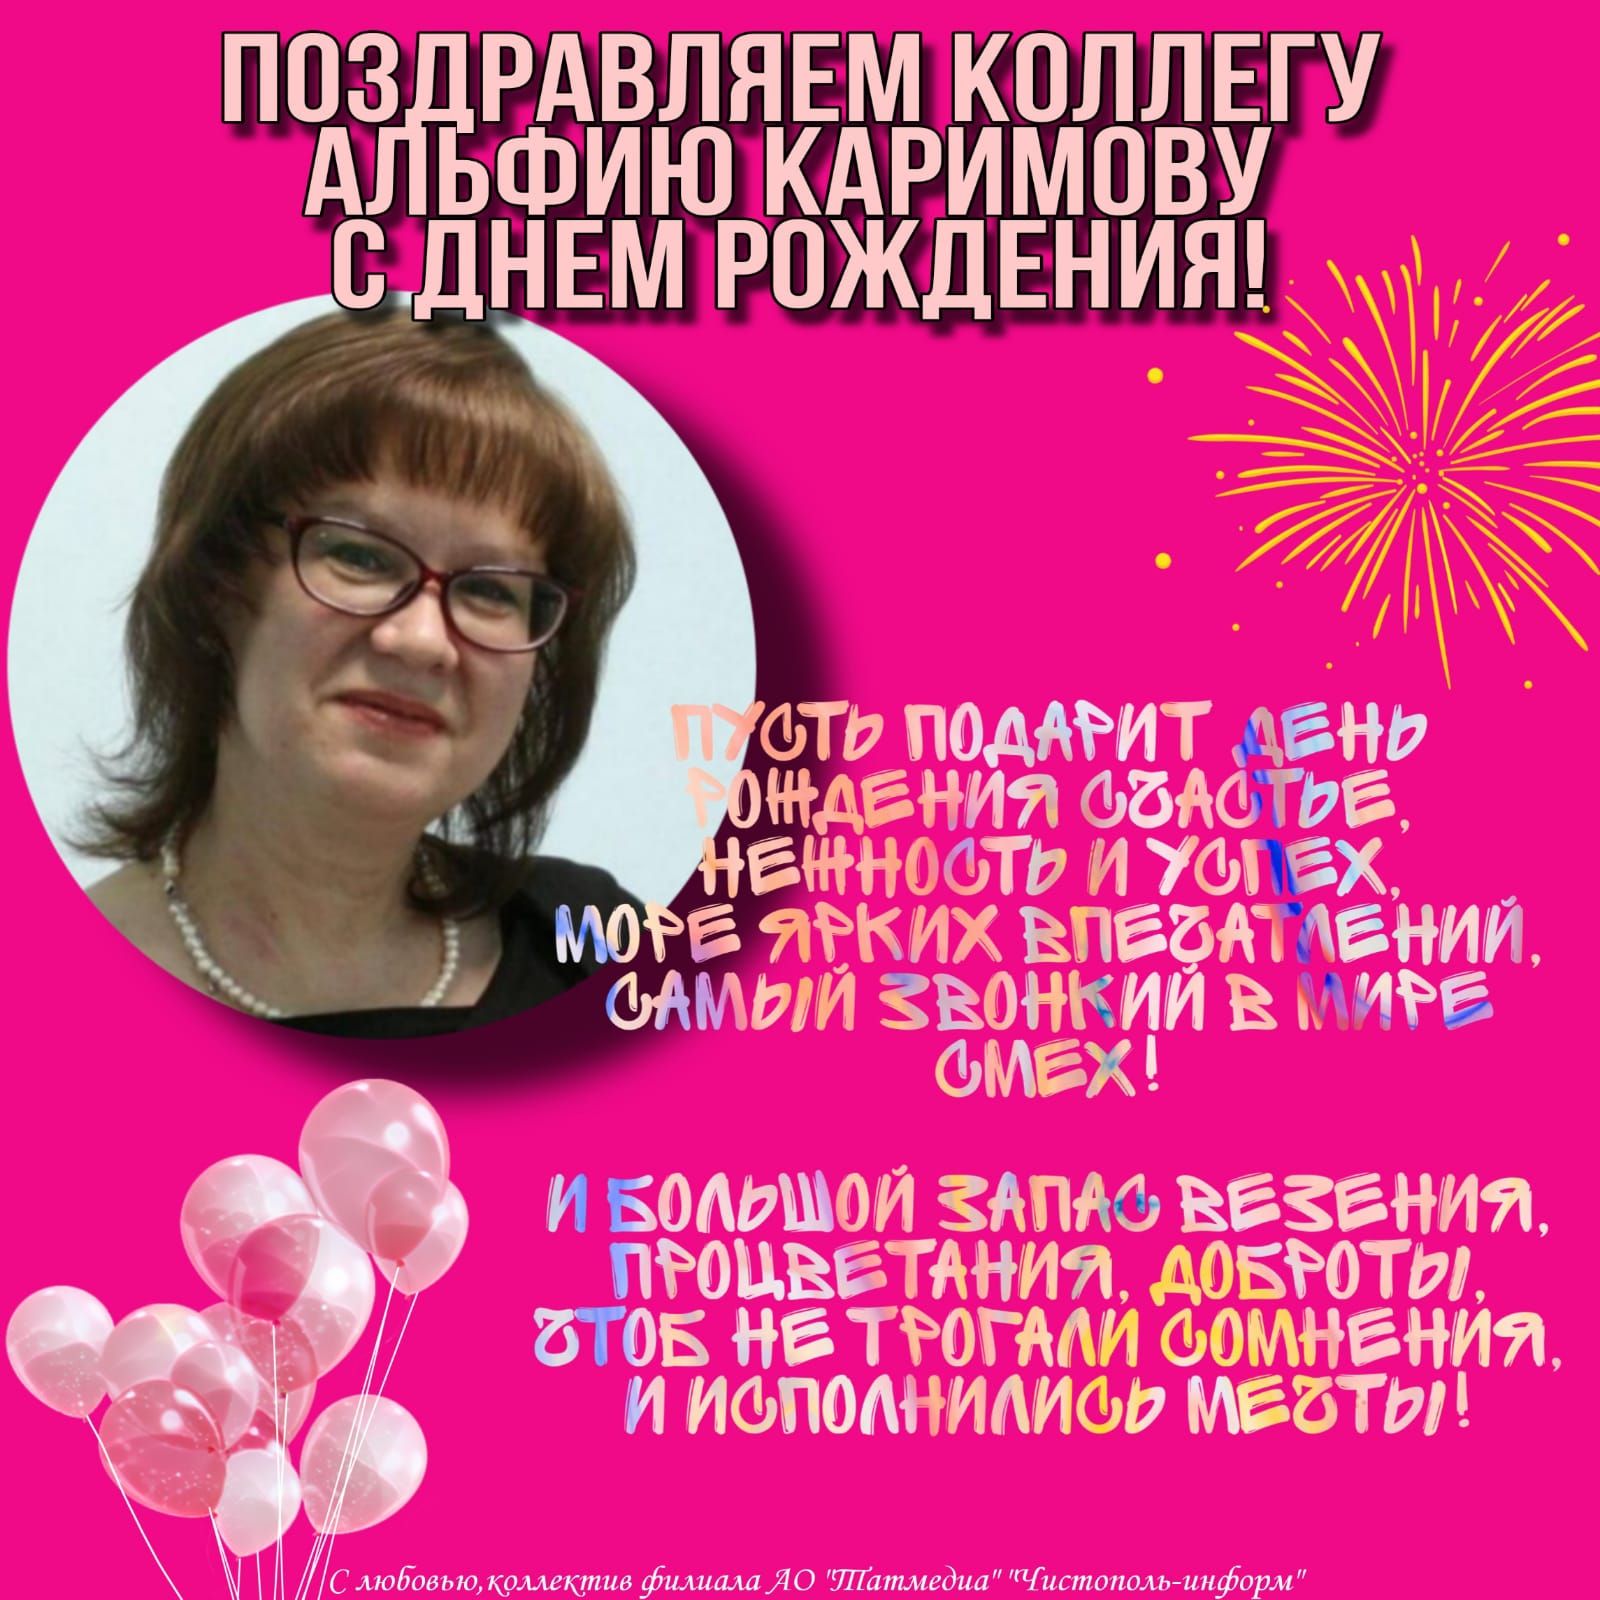 Поздравляем коллегу Альфию Каримову с днем рождения!